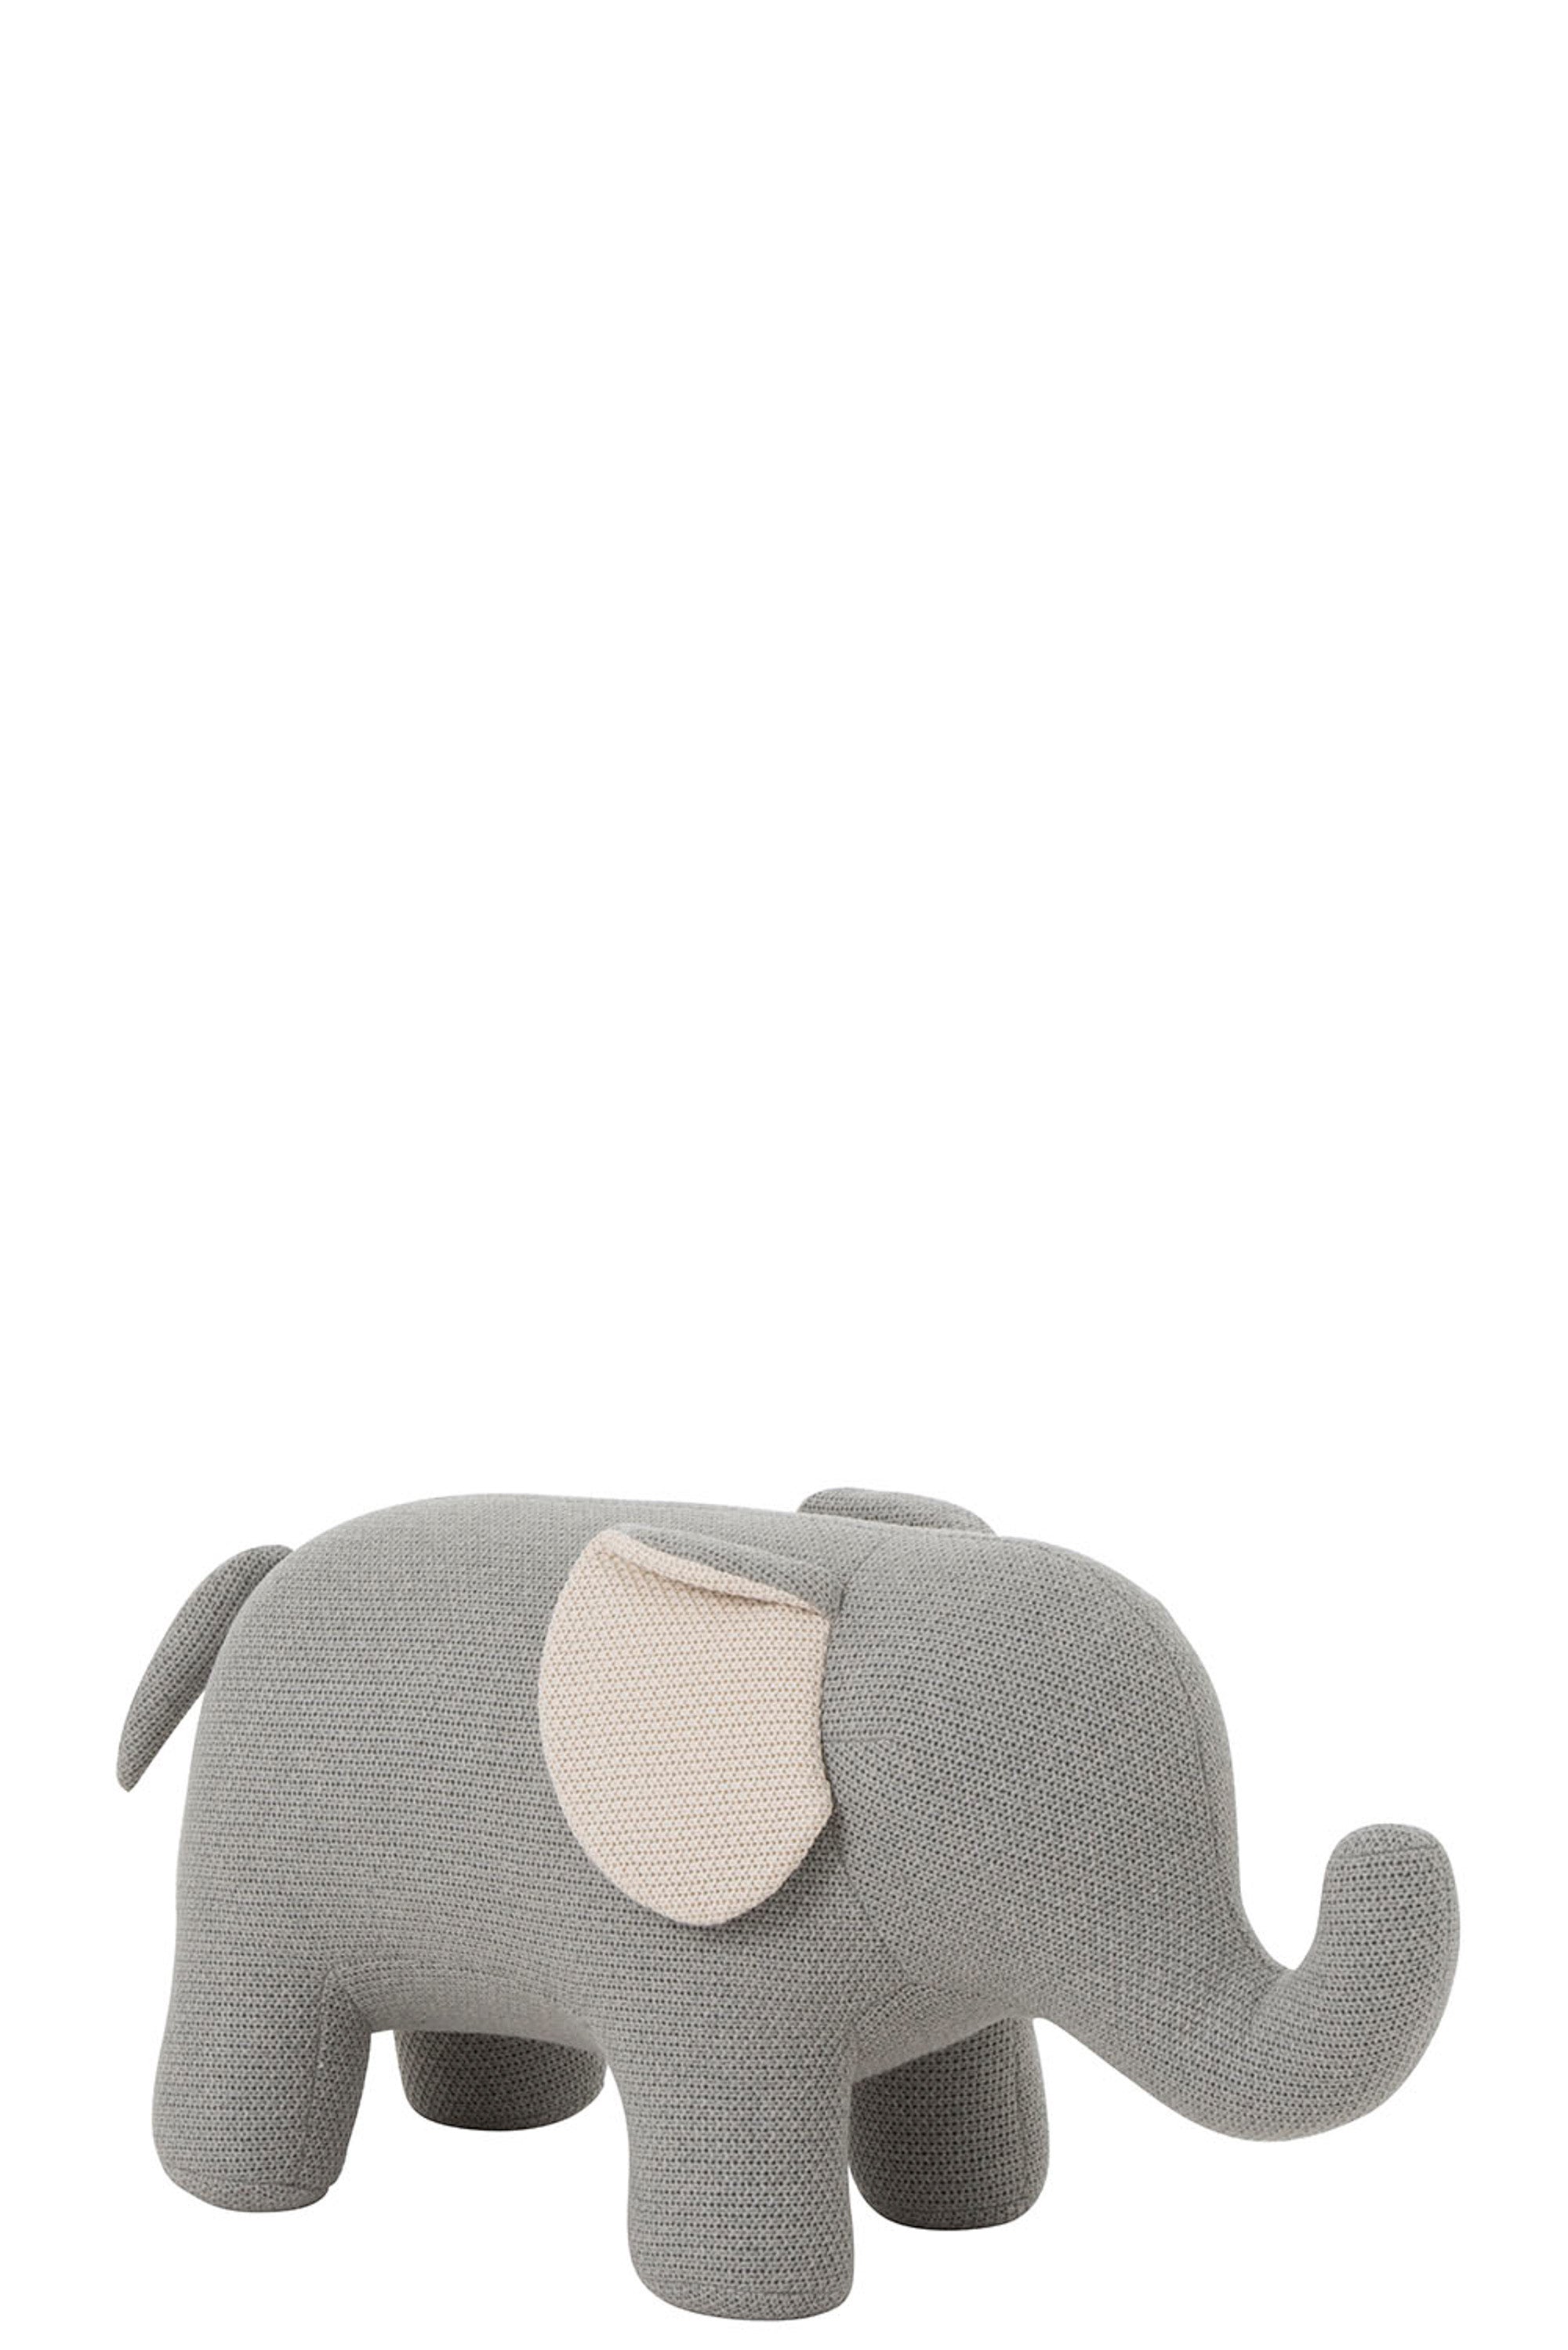 Großer grauer Stoffelefant mit Ohren in der Farbe Ecru , schlicht im Design. inden 